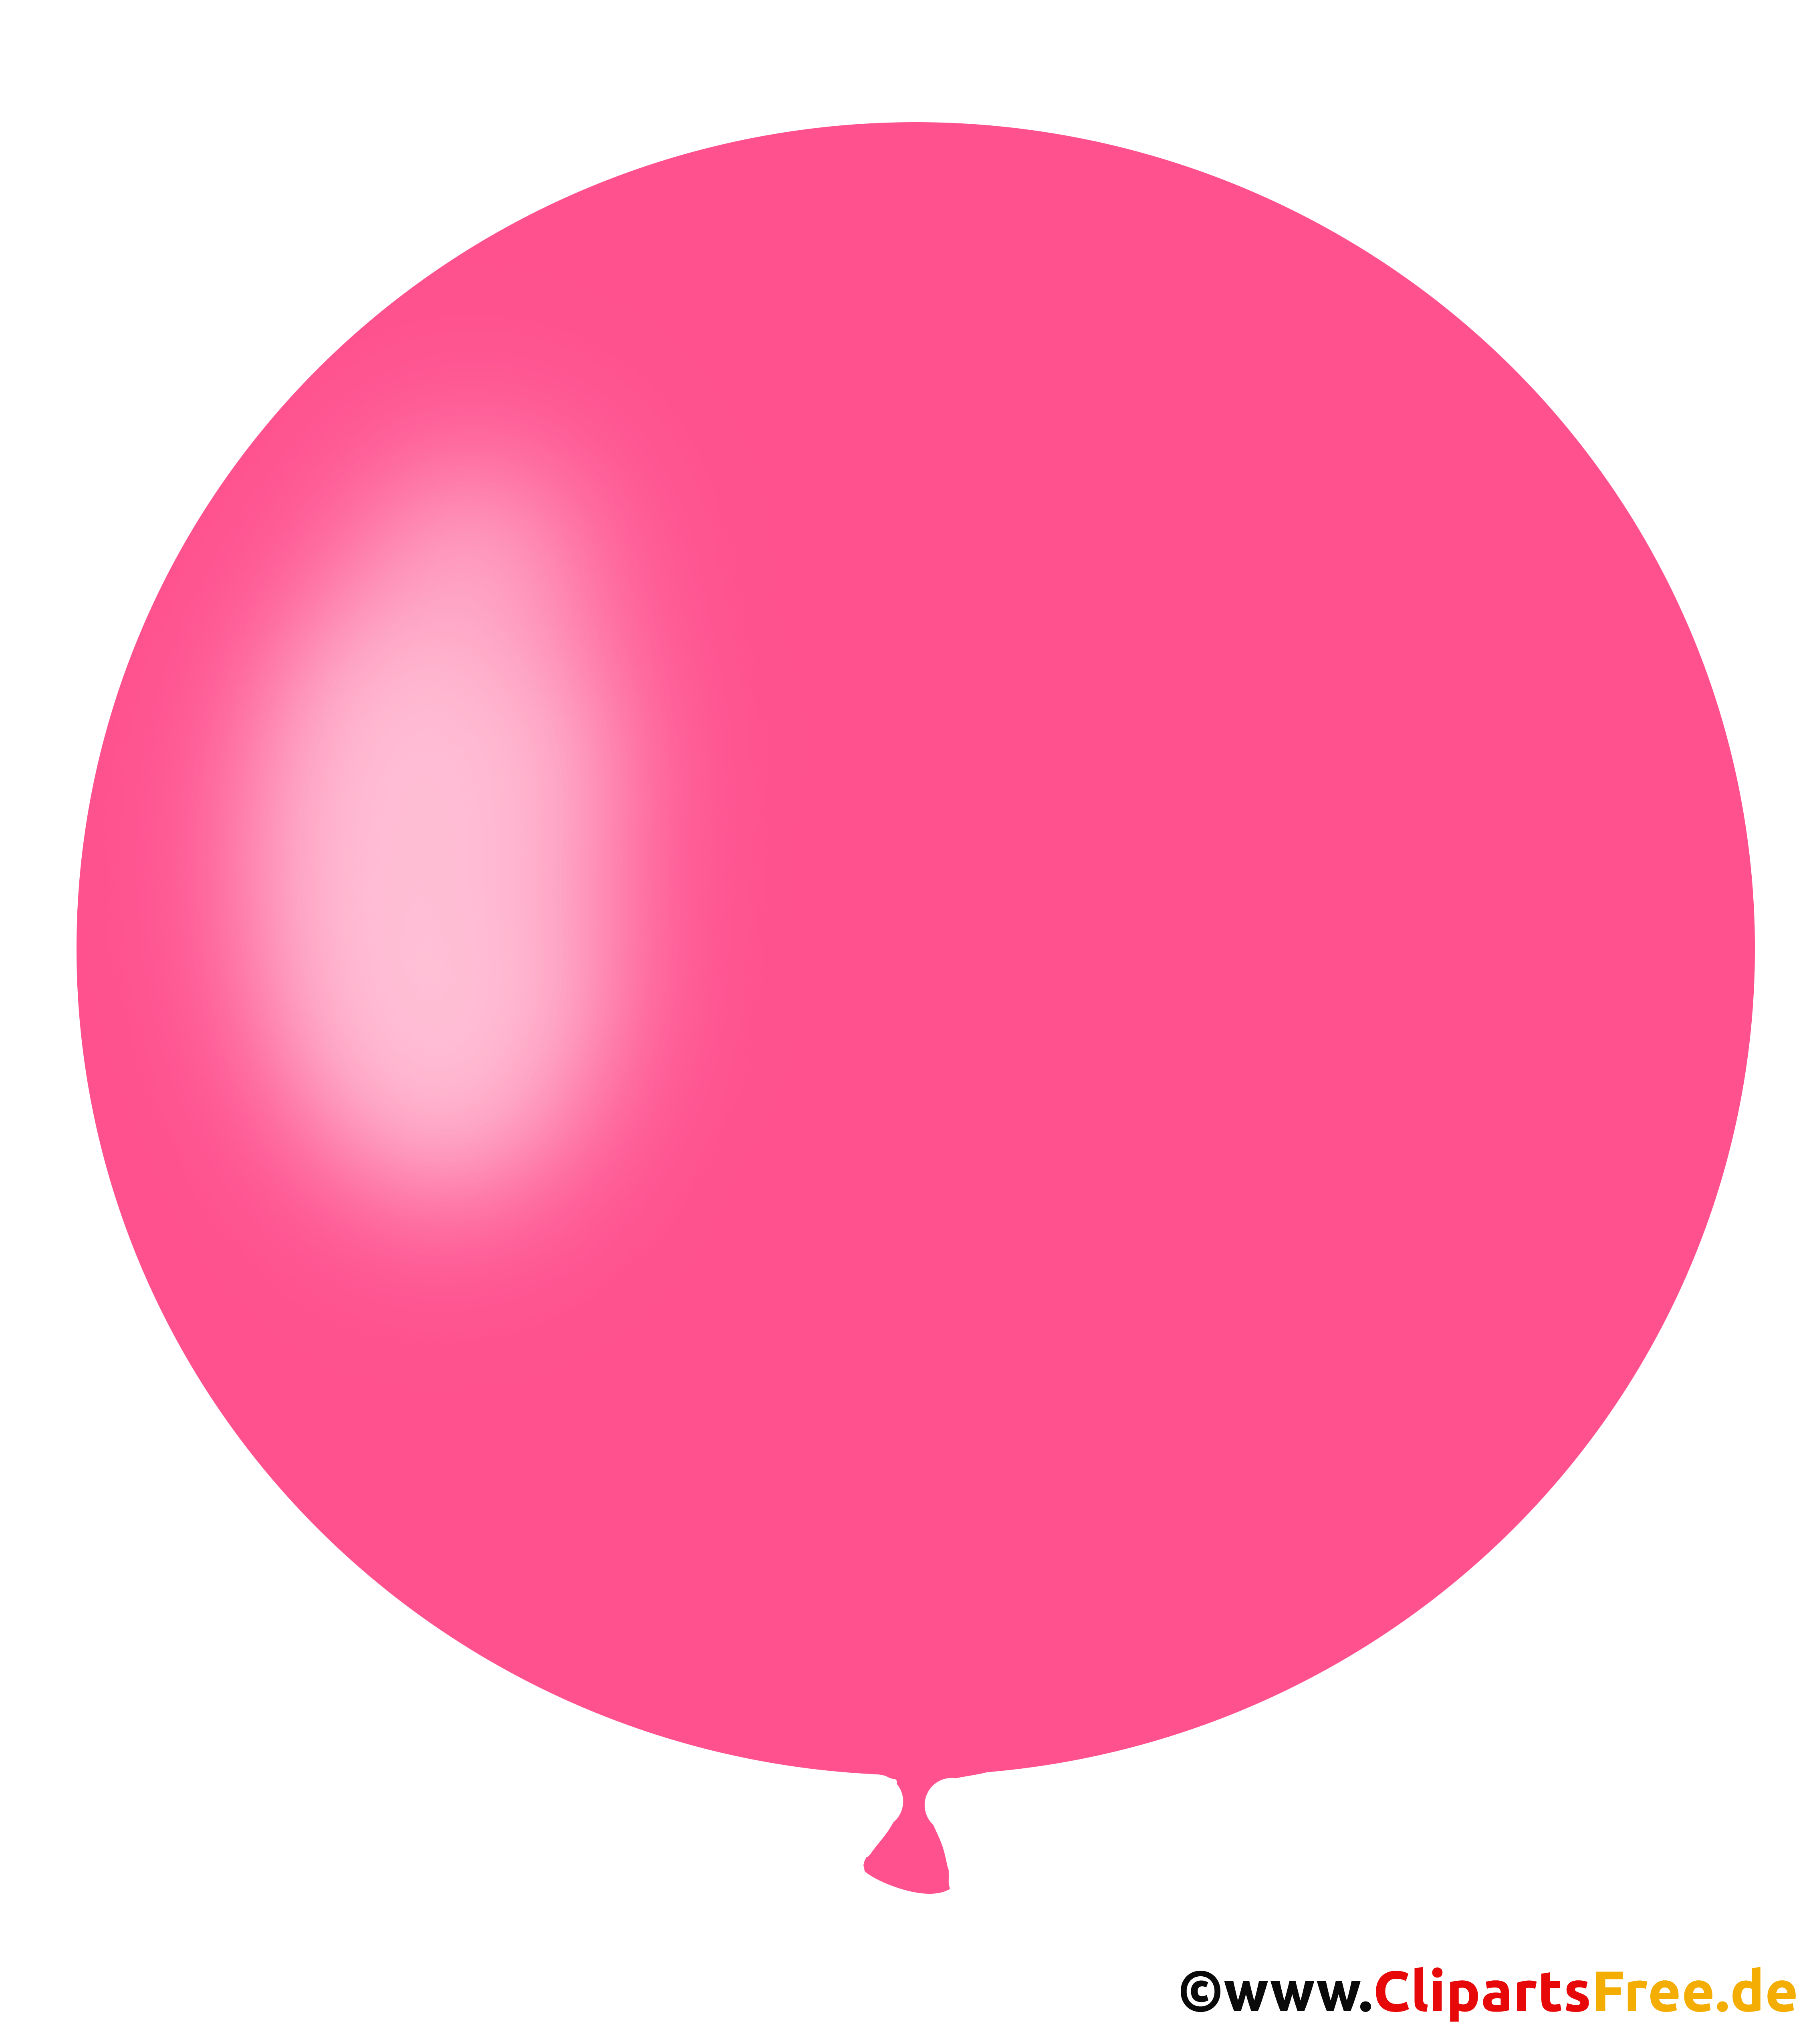 runder-luftballon-in-pink-clipart-illustration-bild